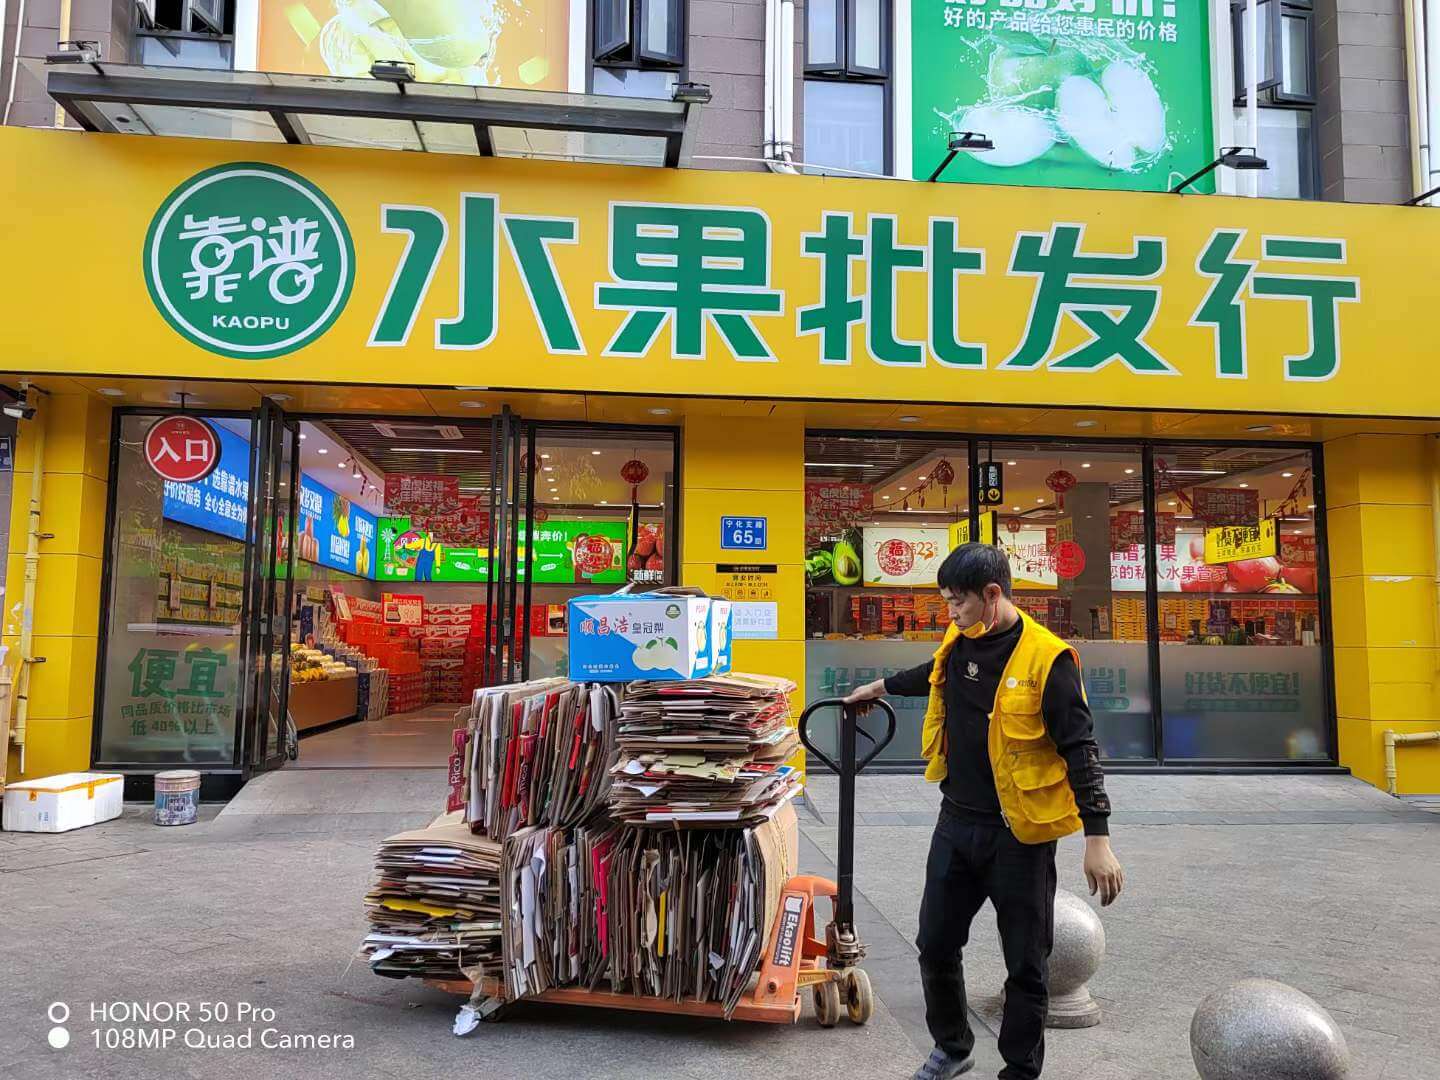 浅析北京的废品回收体系-国际环保在线